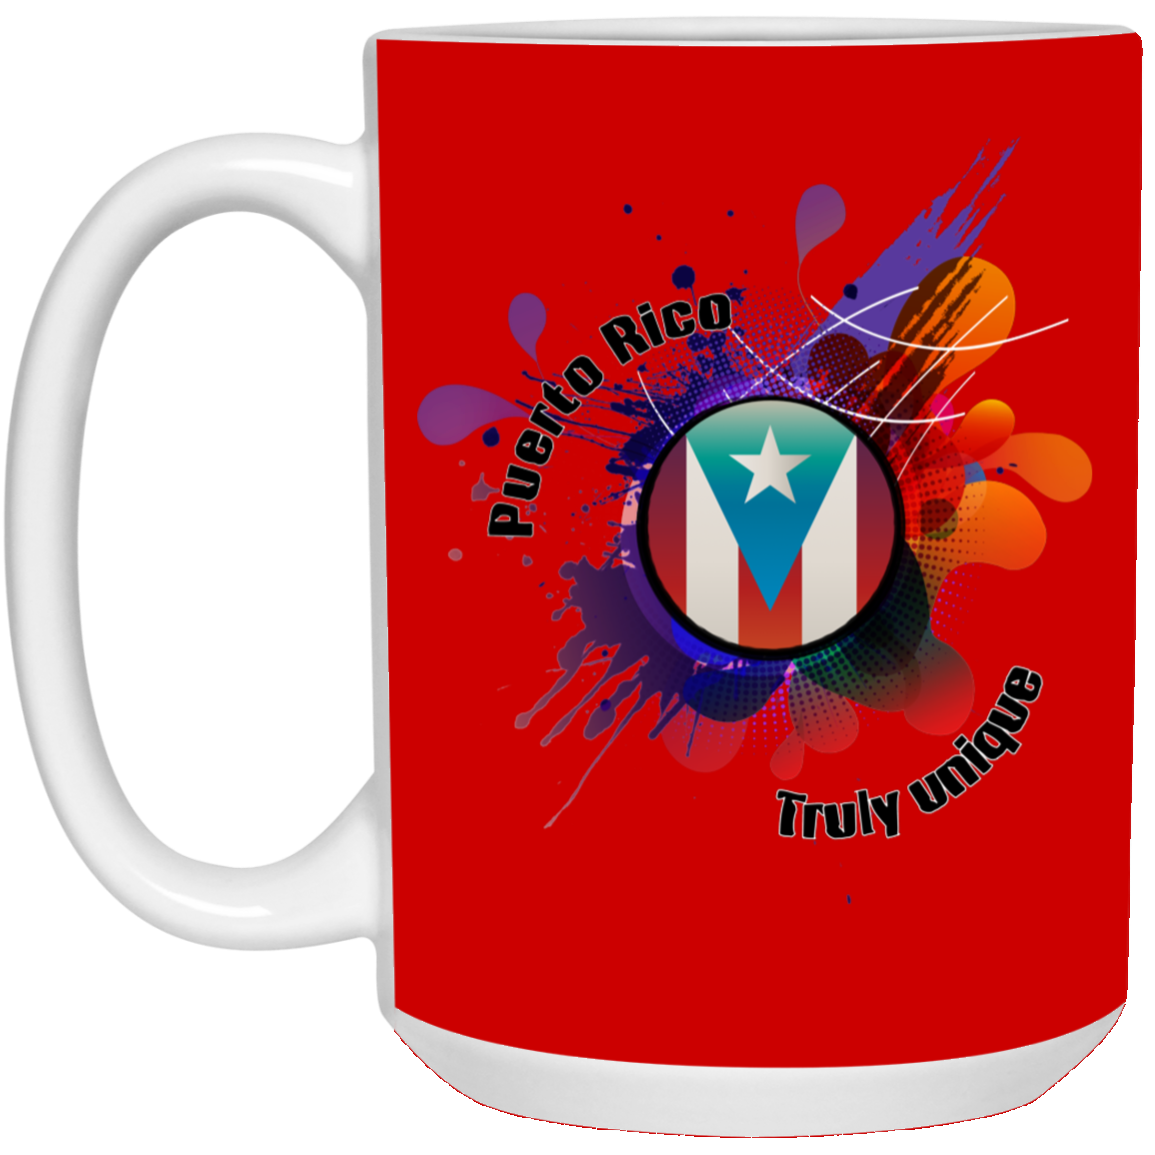 PR Truly Unique 15 oz. White Mug - Puerto Rican Pride